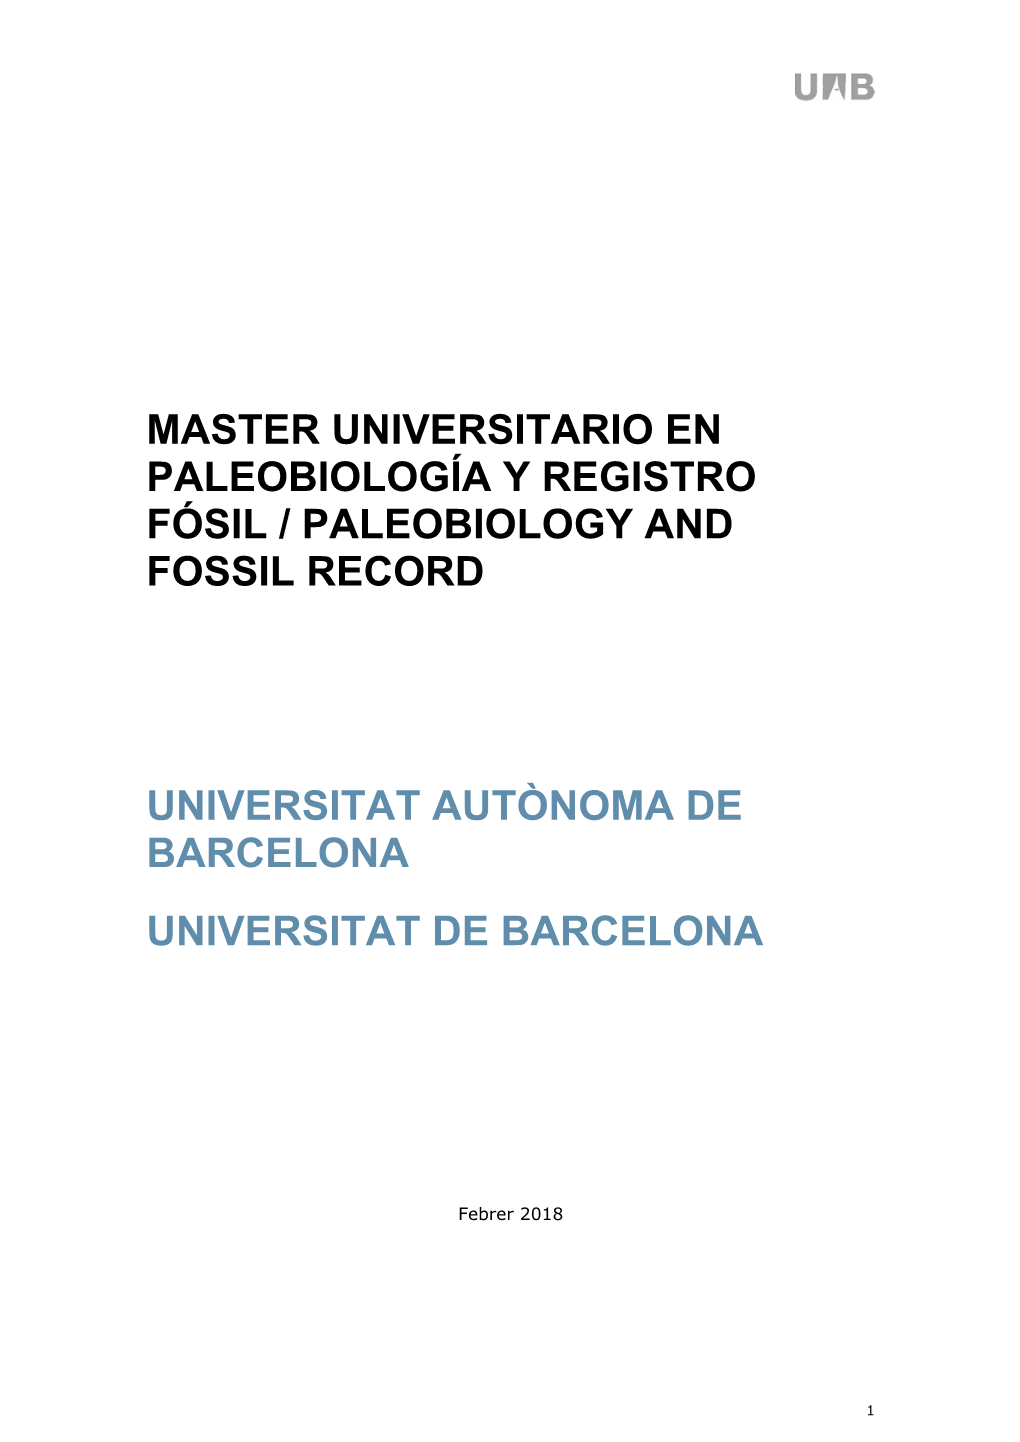 Master Universitario En Paleobiología Y Registro Fósil / Paleobiology and Fossil Record